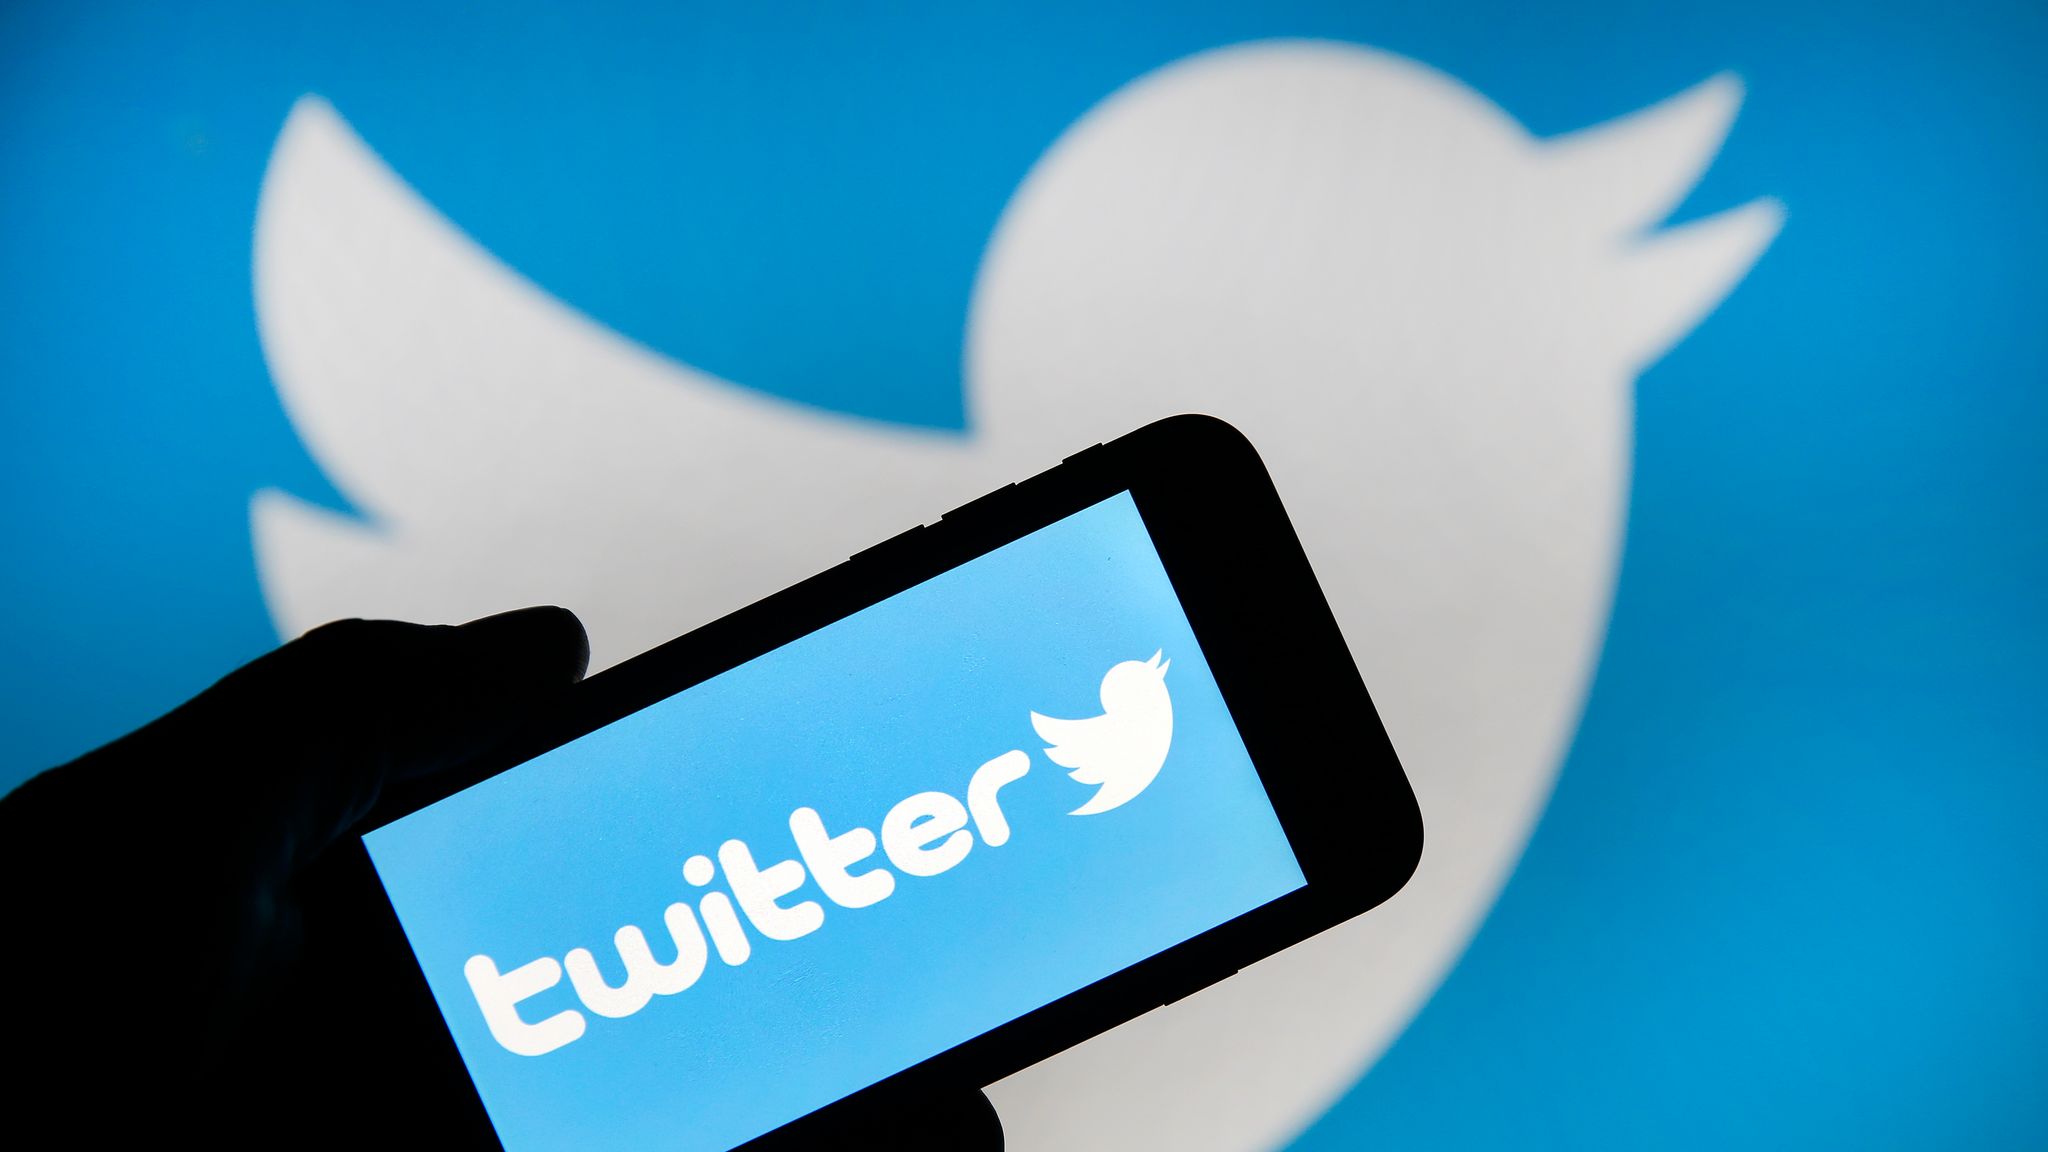 Twitter, Microsoft u verileri kötüye kullanmakla suçladı